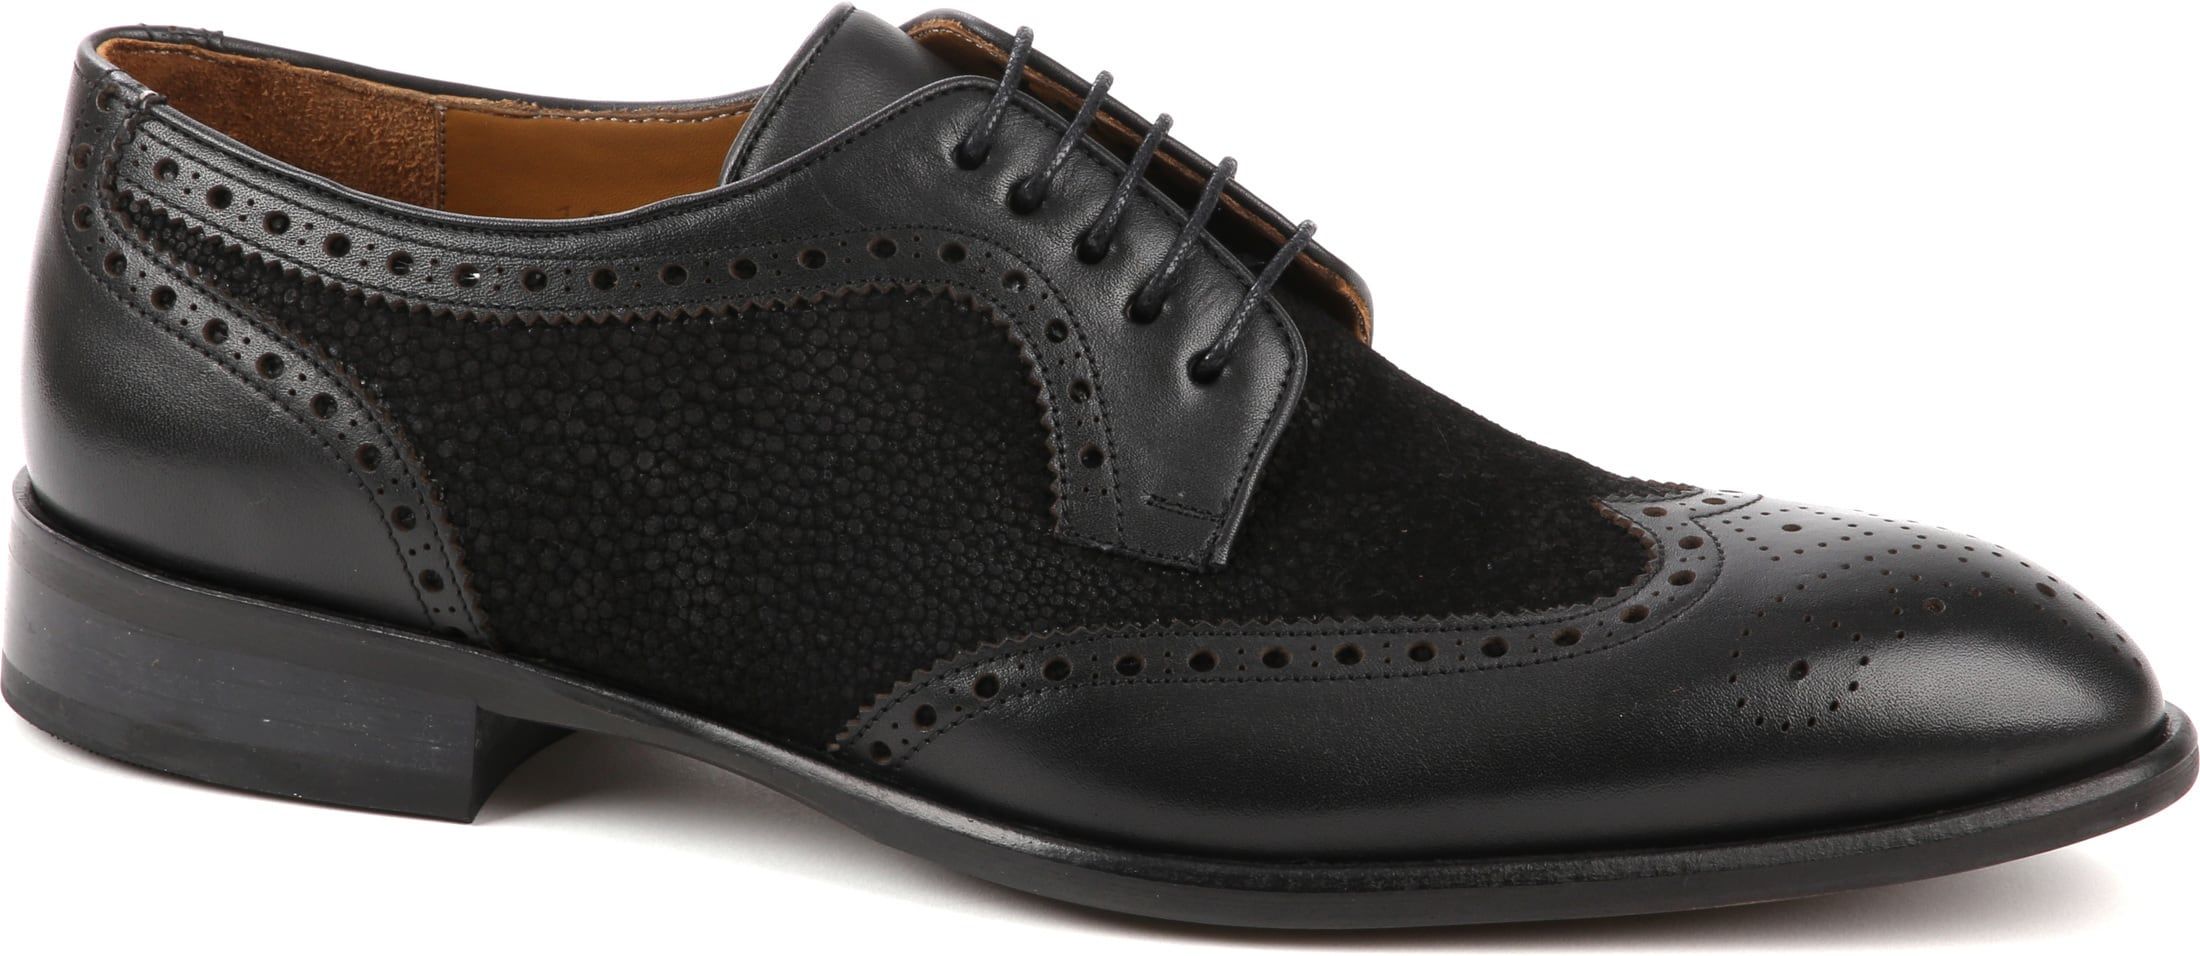 Suitable Leather Shoe Dessin Black size 10.5